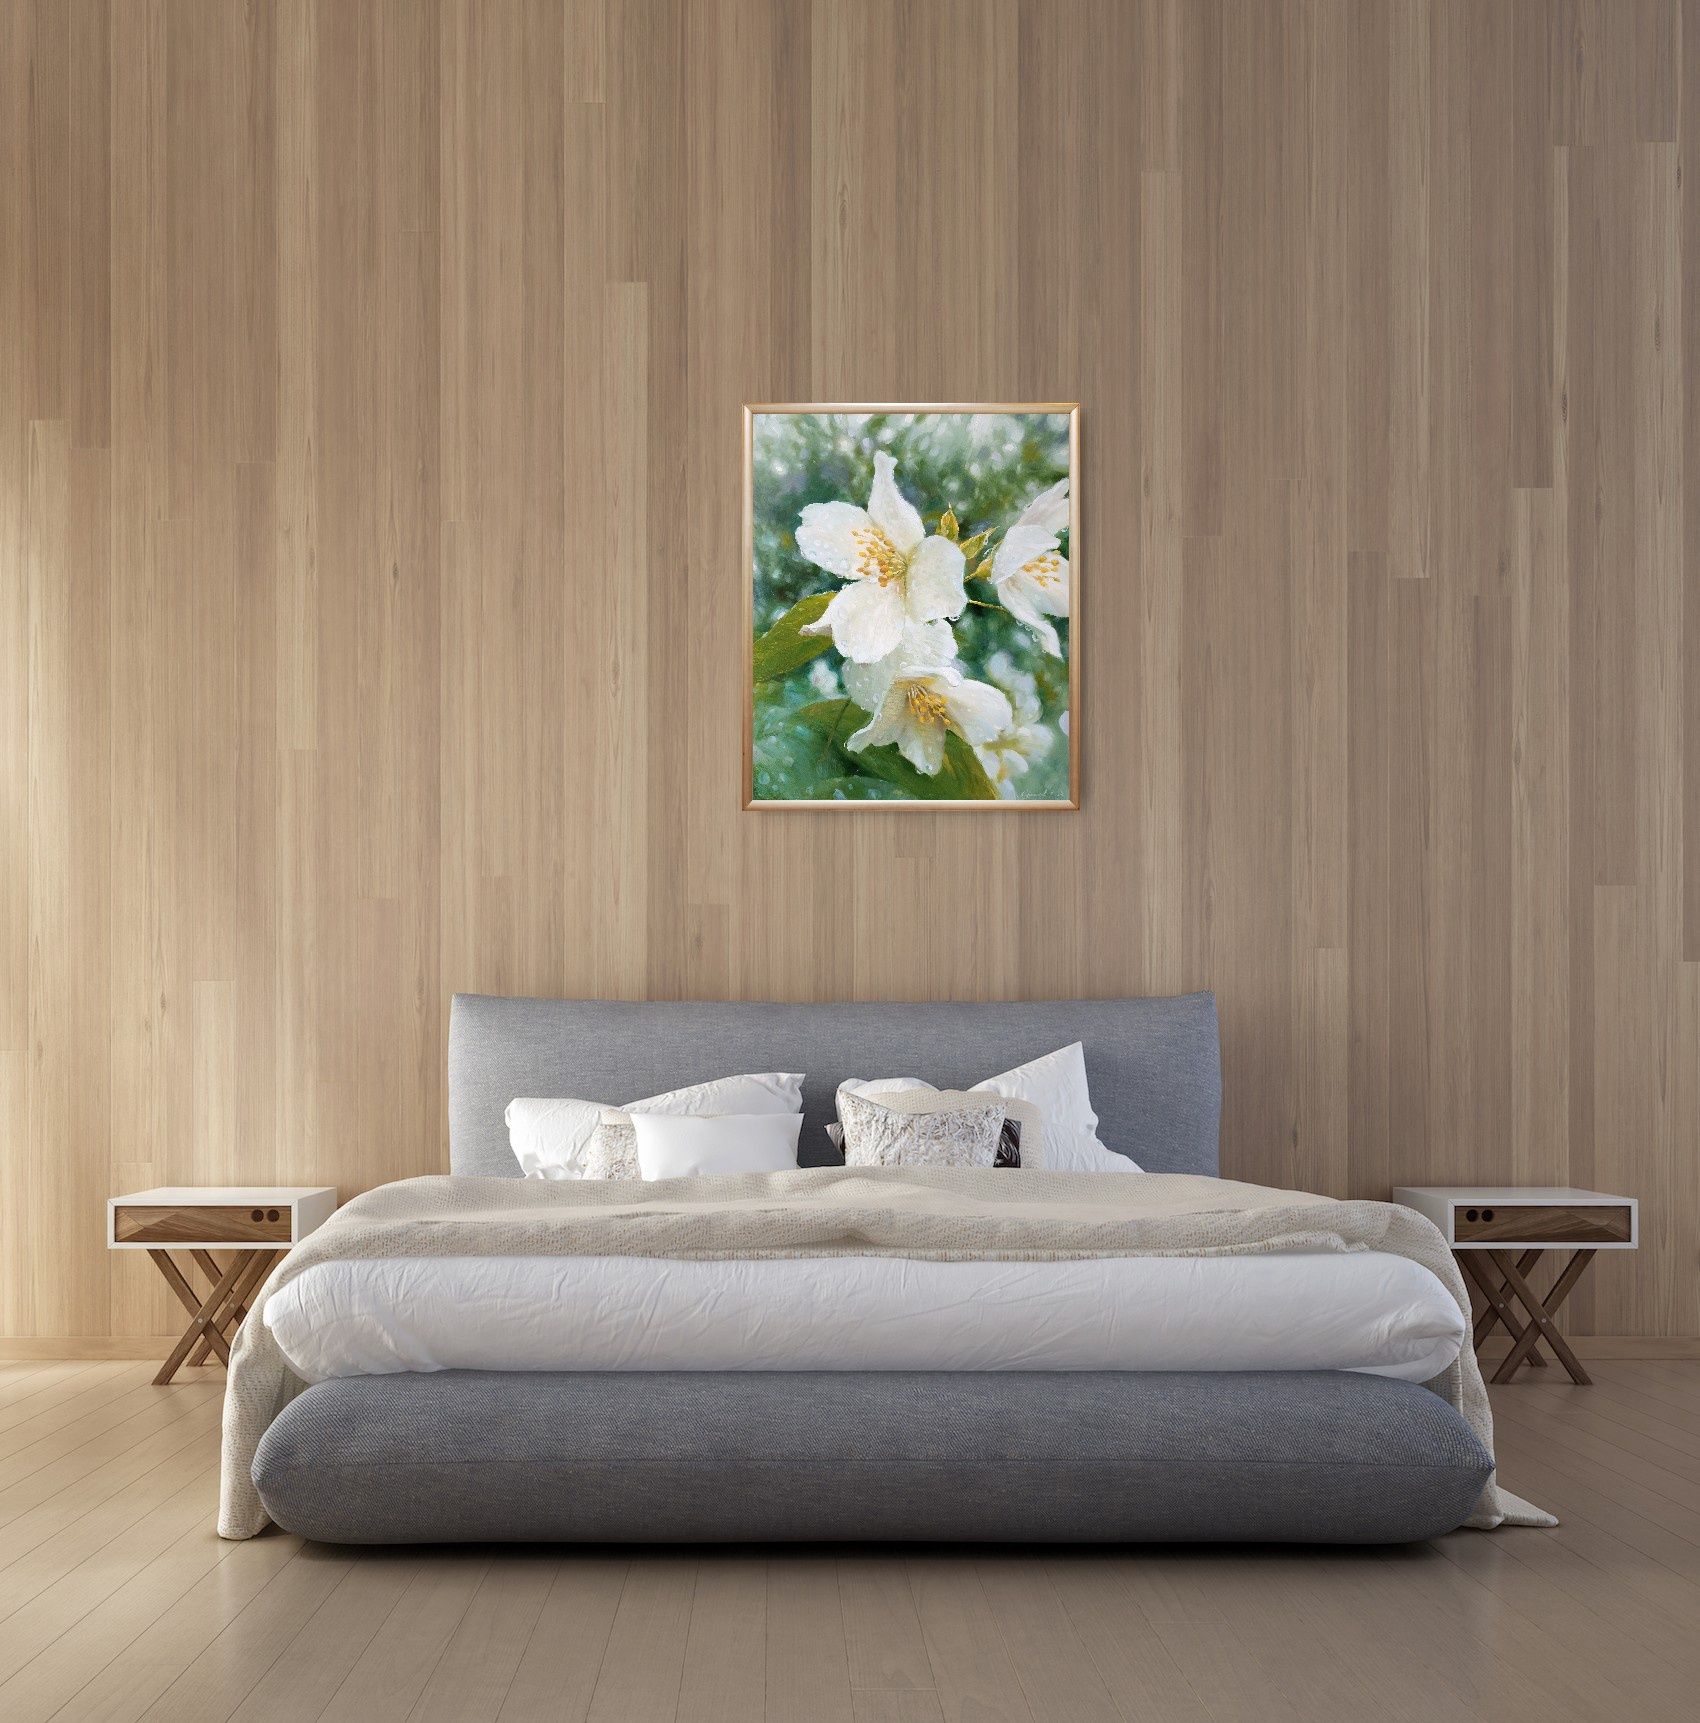 Продається картина "Жасмин", олійний живопис на полотні , 50х60см